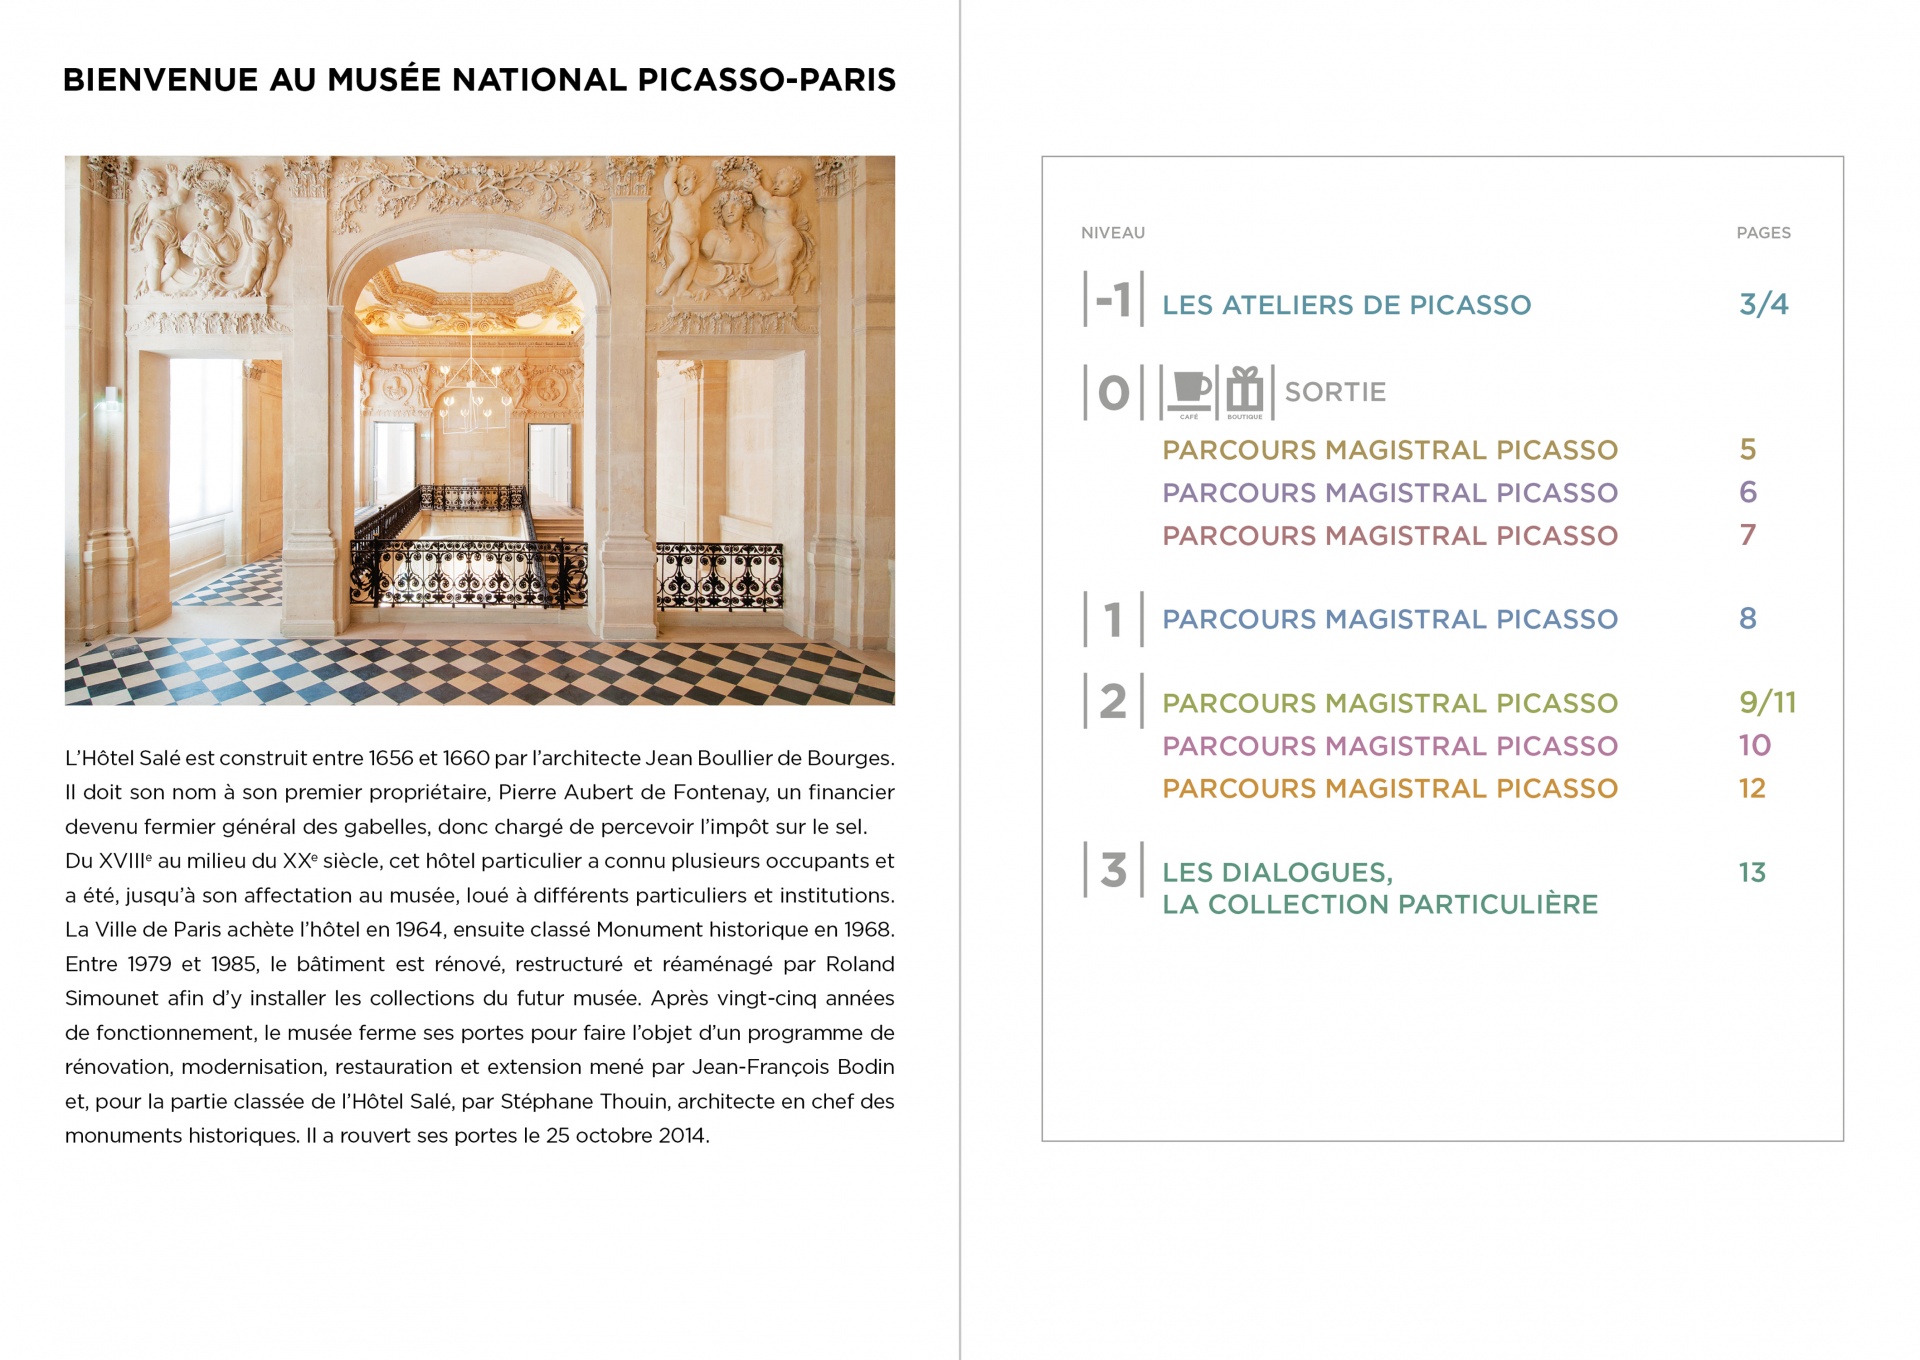 Comment trouver son chemin pour la réouverture du musée PICASSO-PARIS